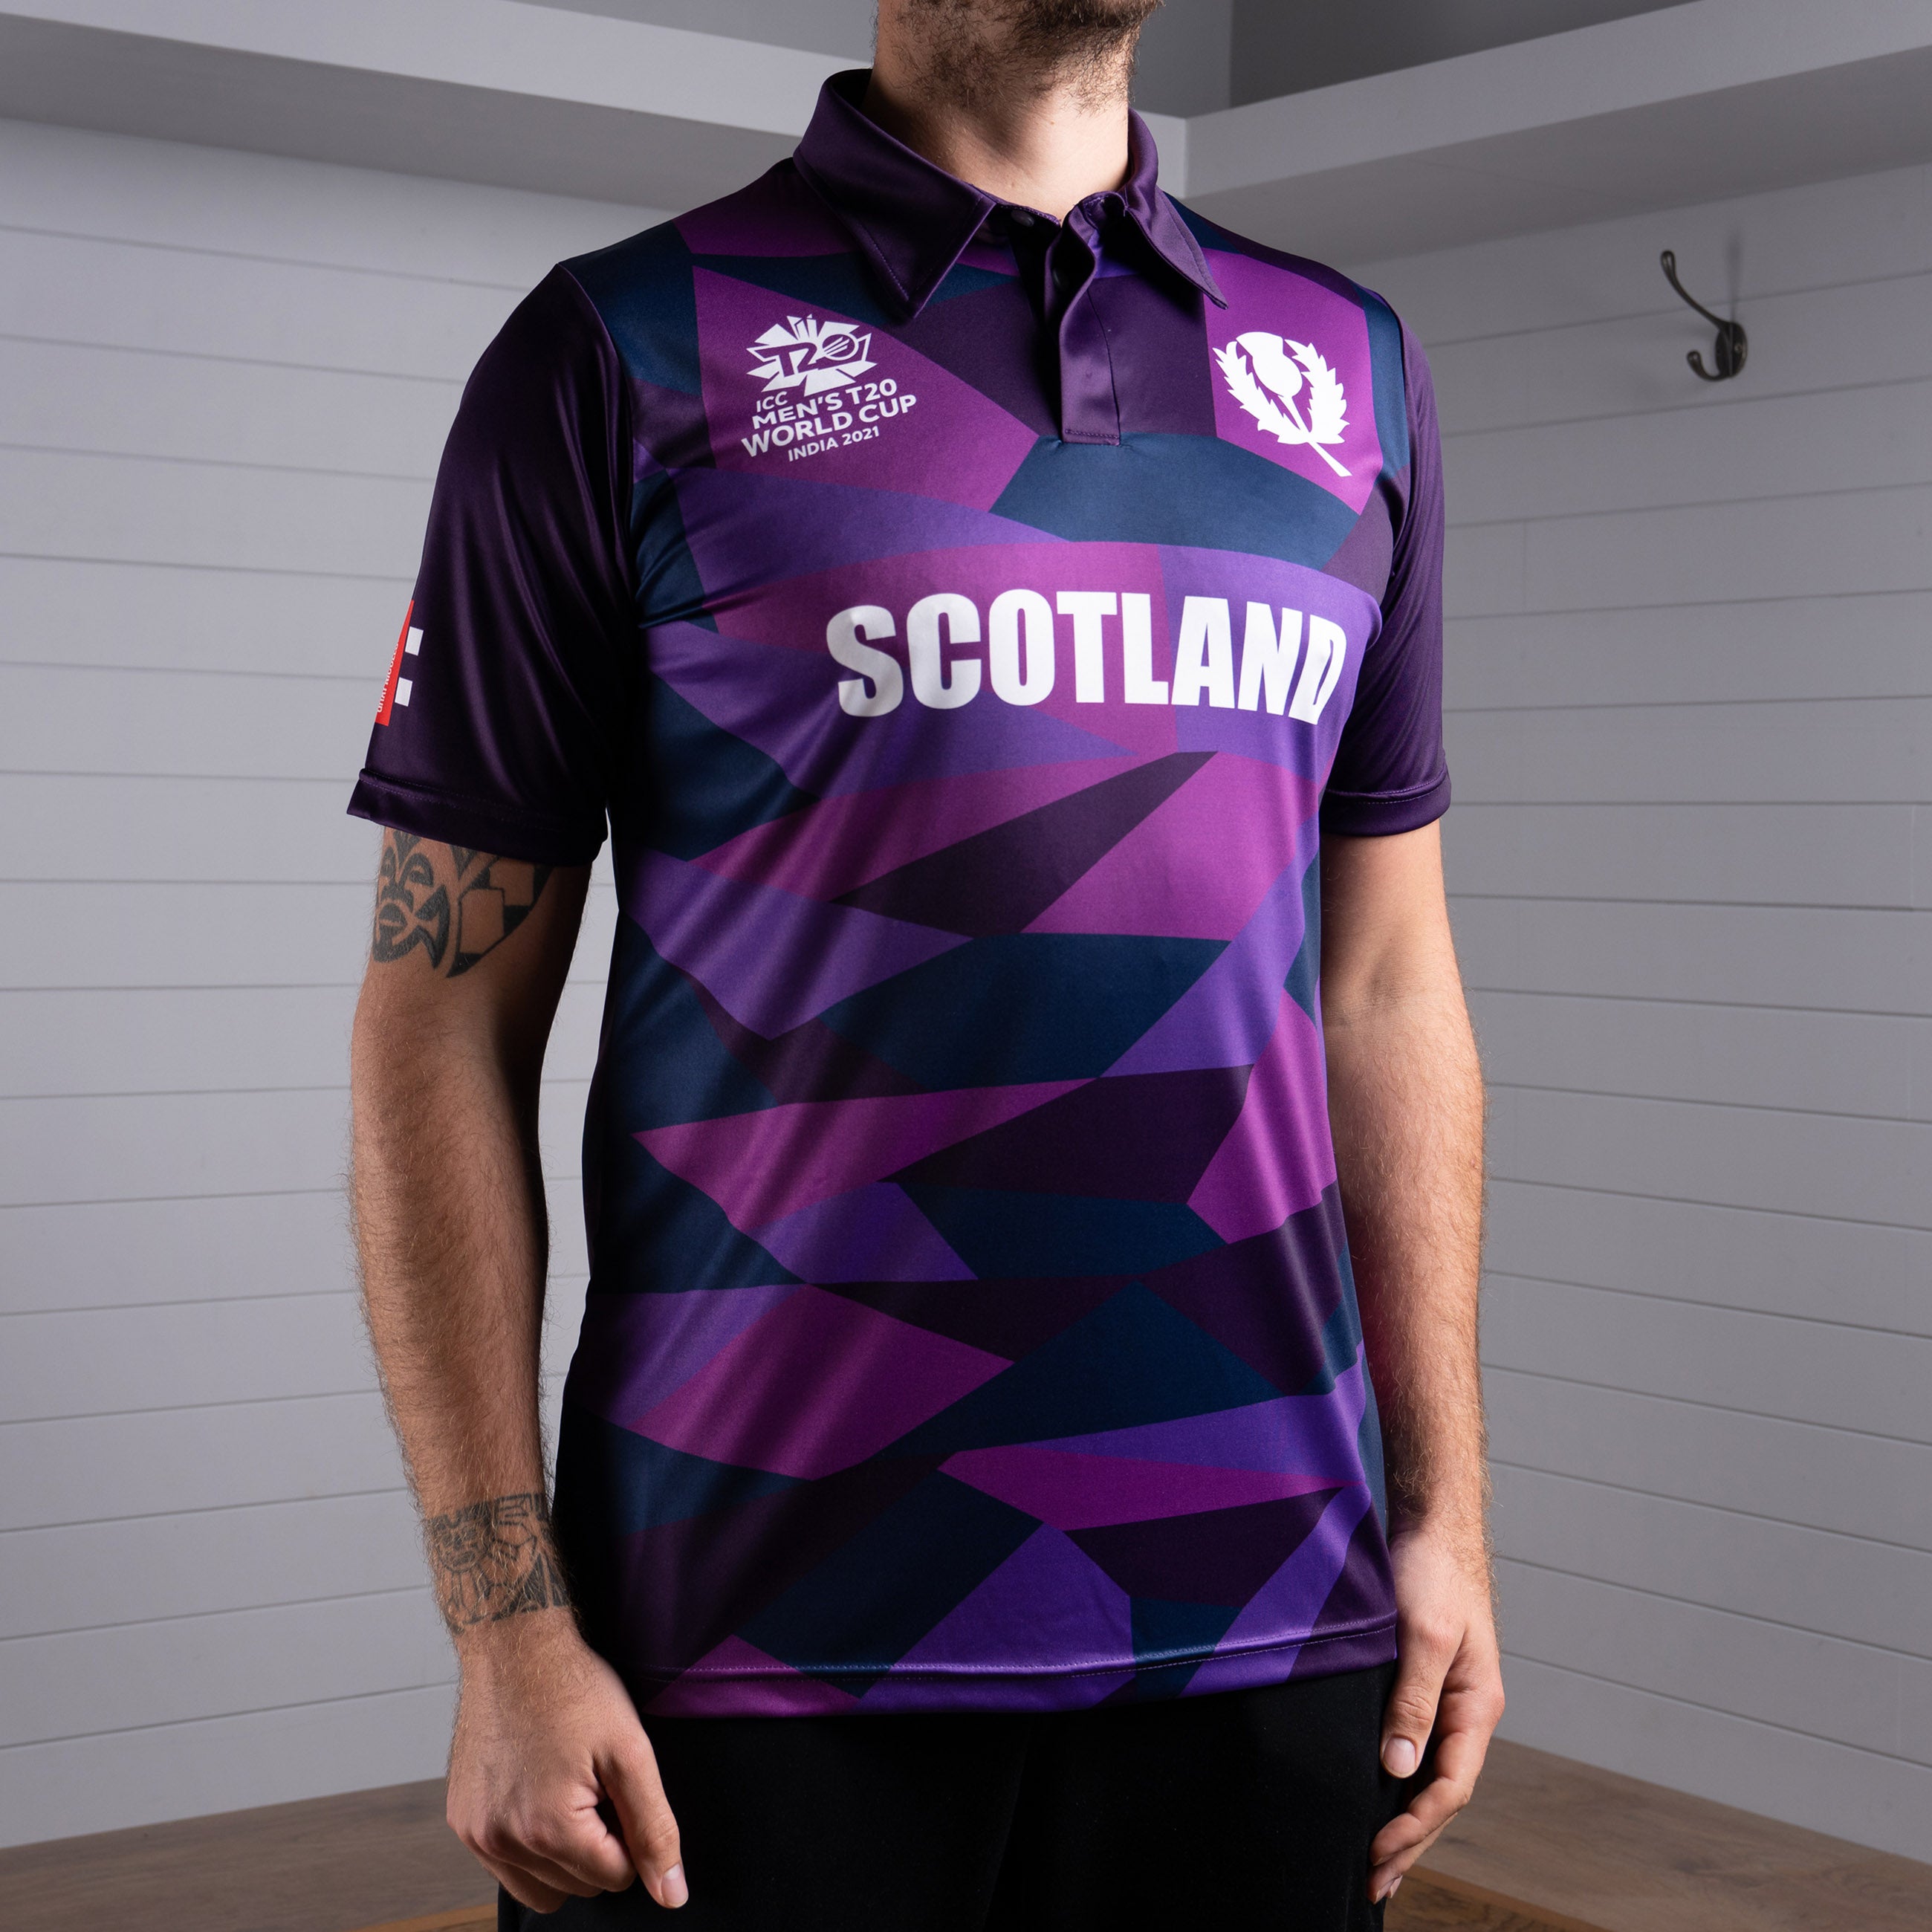 Cricket Scotland T20 World Cup Short Sleeve Shirt - Men's